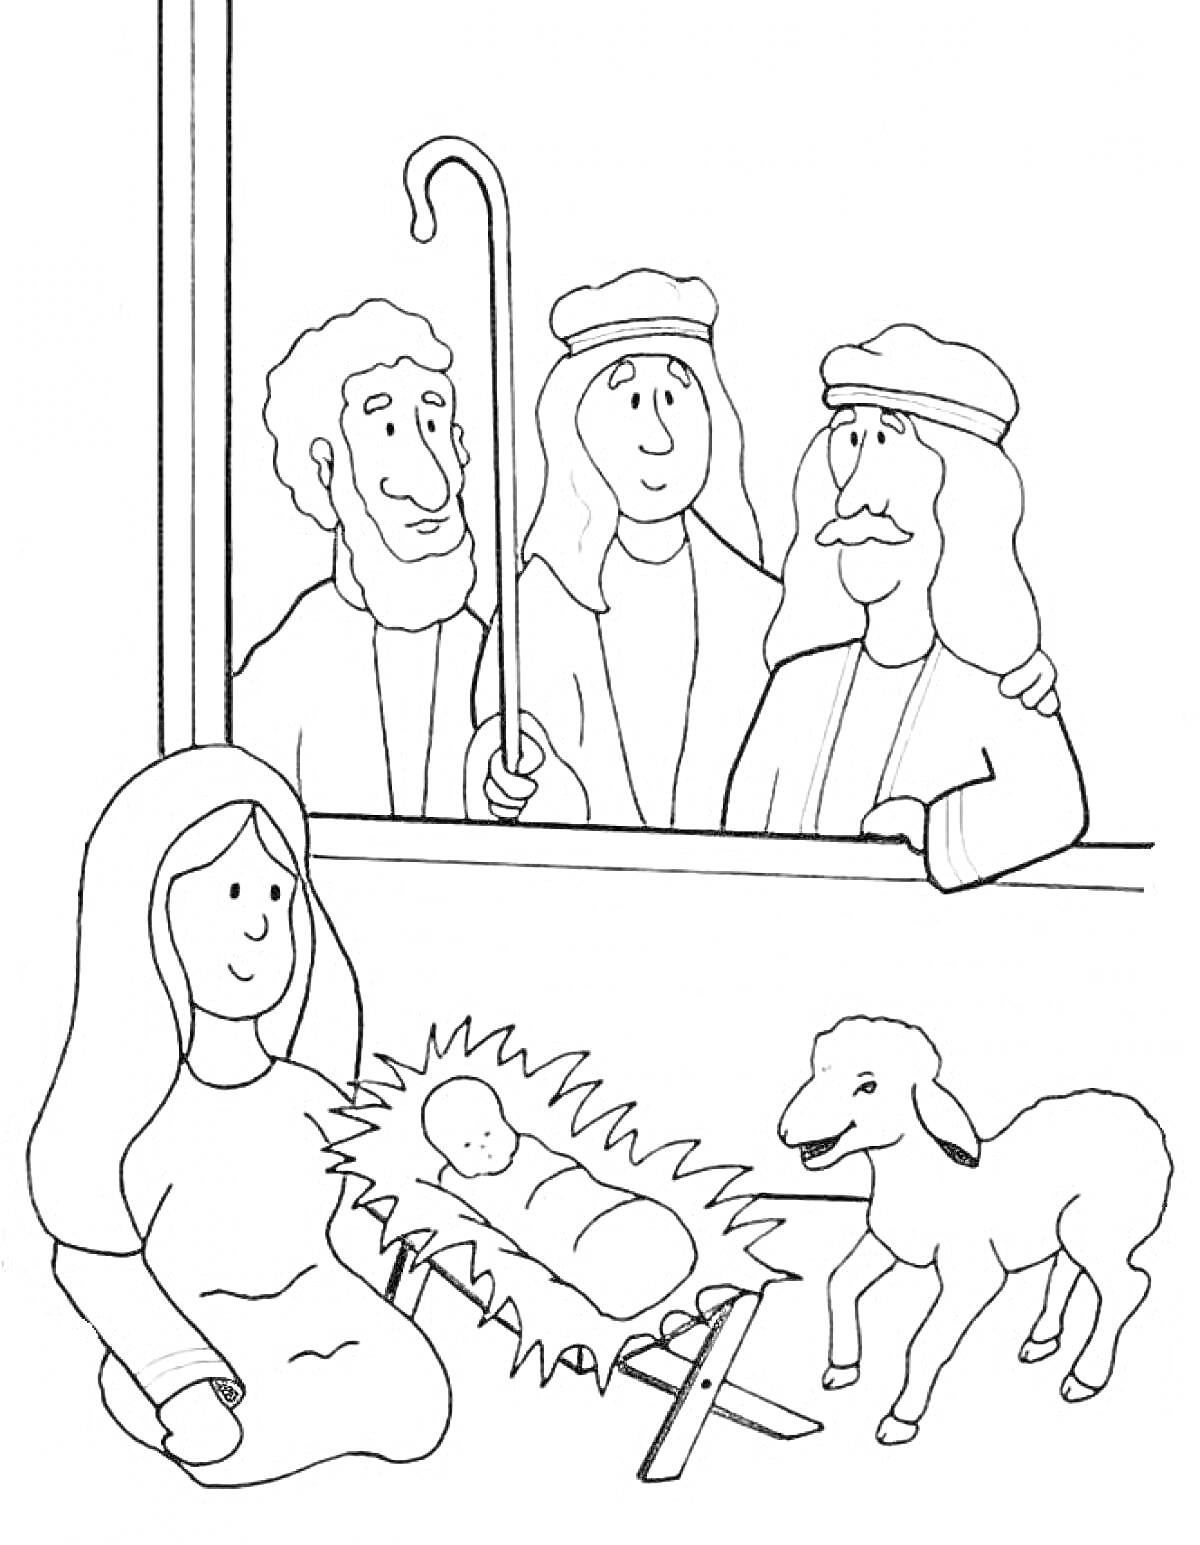 Рождество — младенец Иисус в яслях, три пастуха у окна, женщина сидит рядом, овечка стоит рядом с яслями